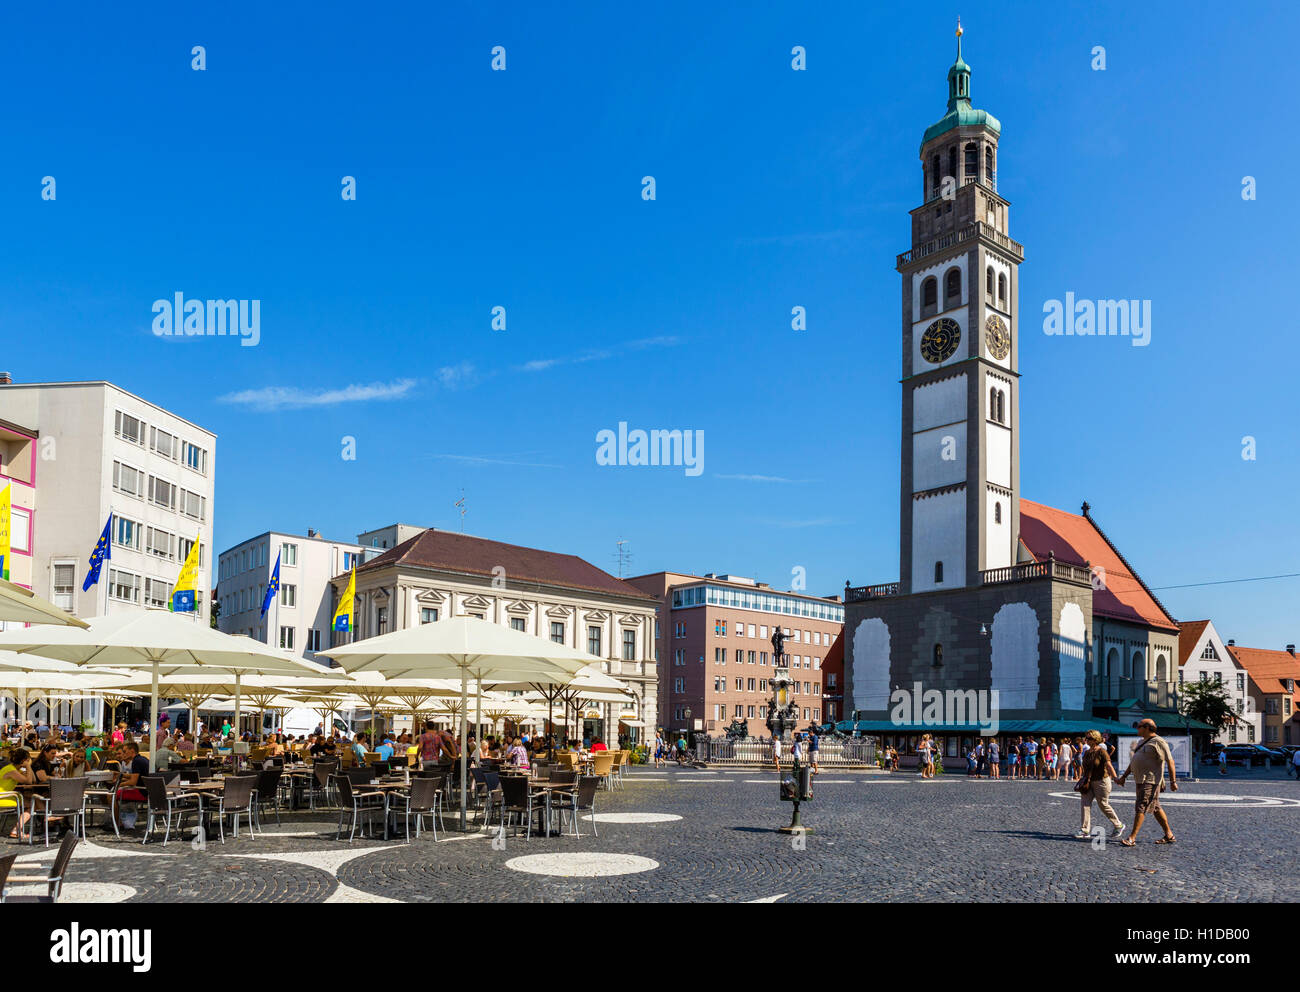 Cafe im Rathausplatz mit Blick auf den Perlachturm (Perlach Turm) und Kirche von St. Peter, Augsburg, Bayern, Deutschland Stockfoto